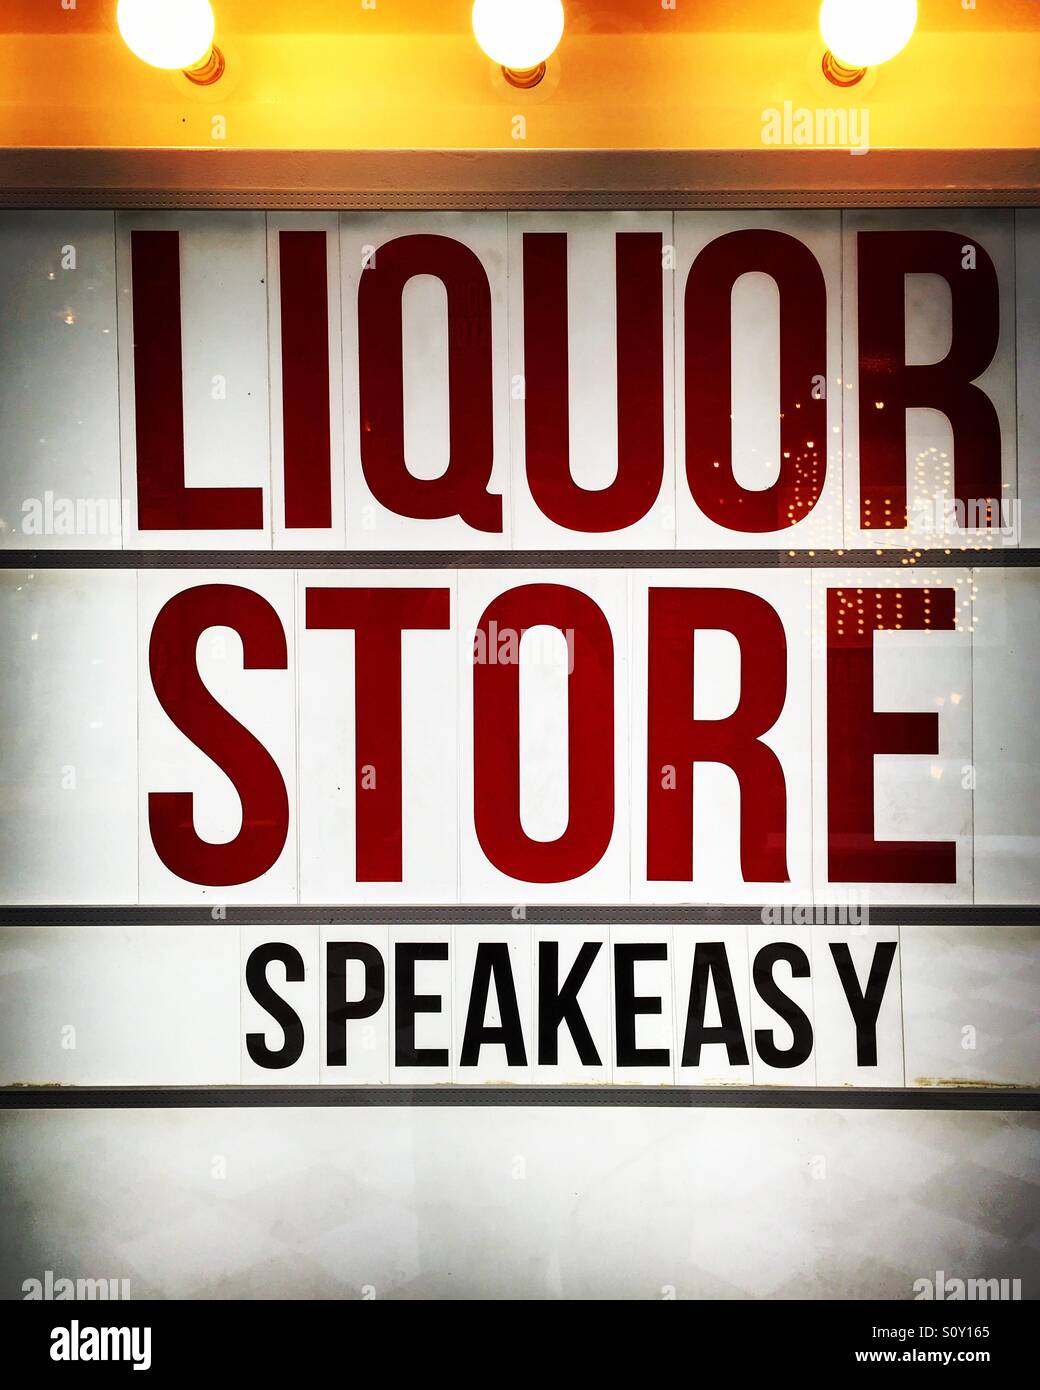 Liquor Store Speakeasy Sign. Stock Photo